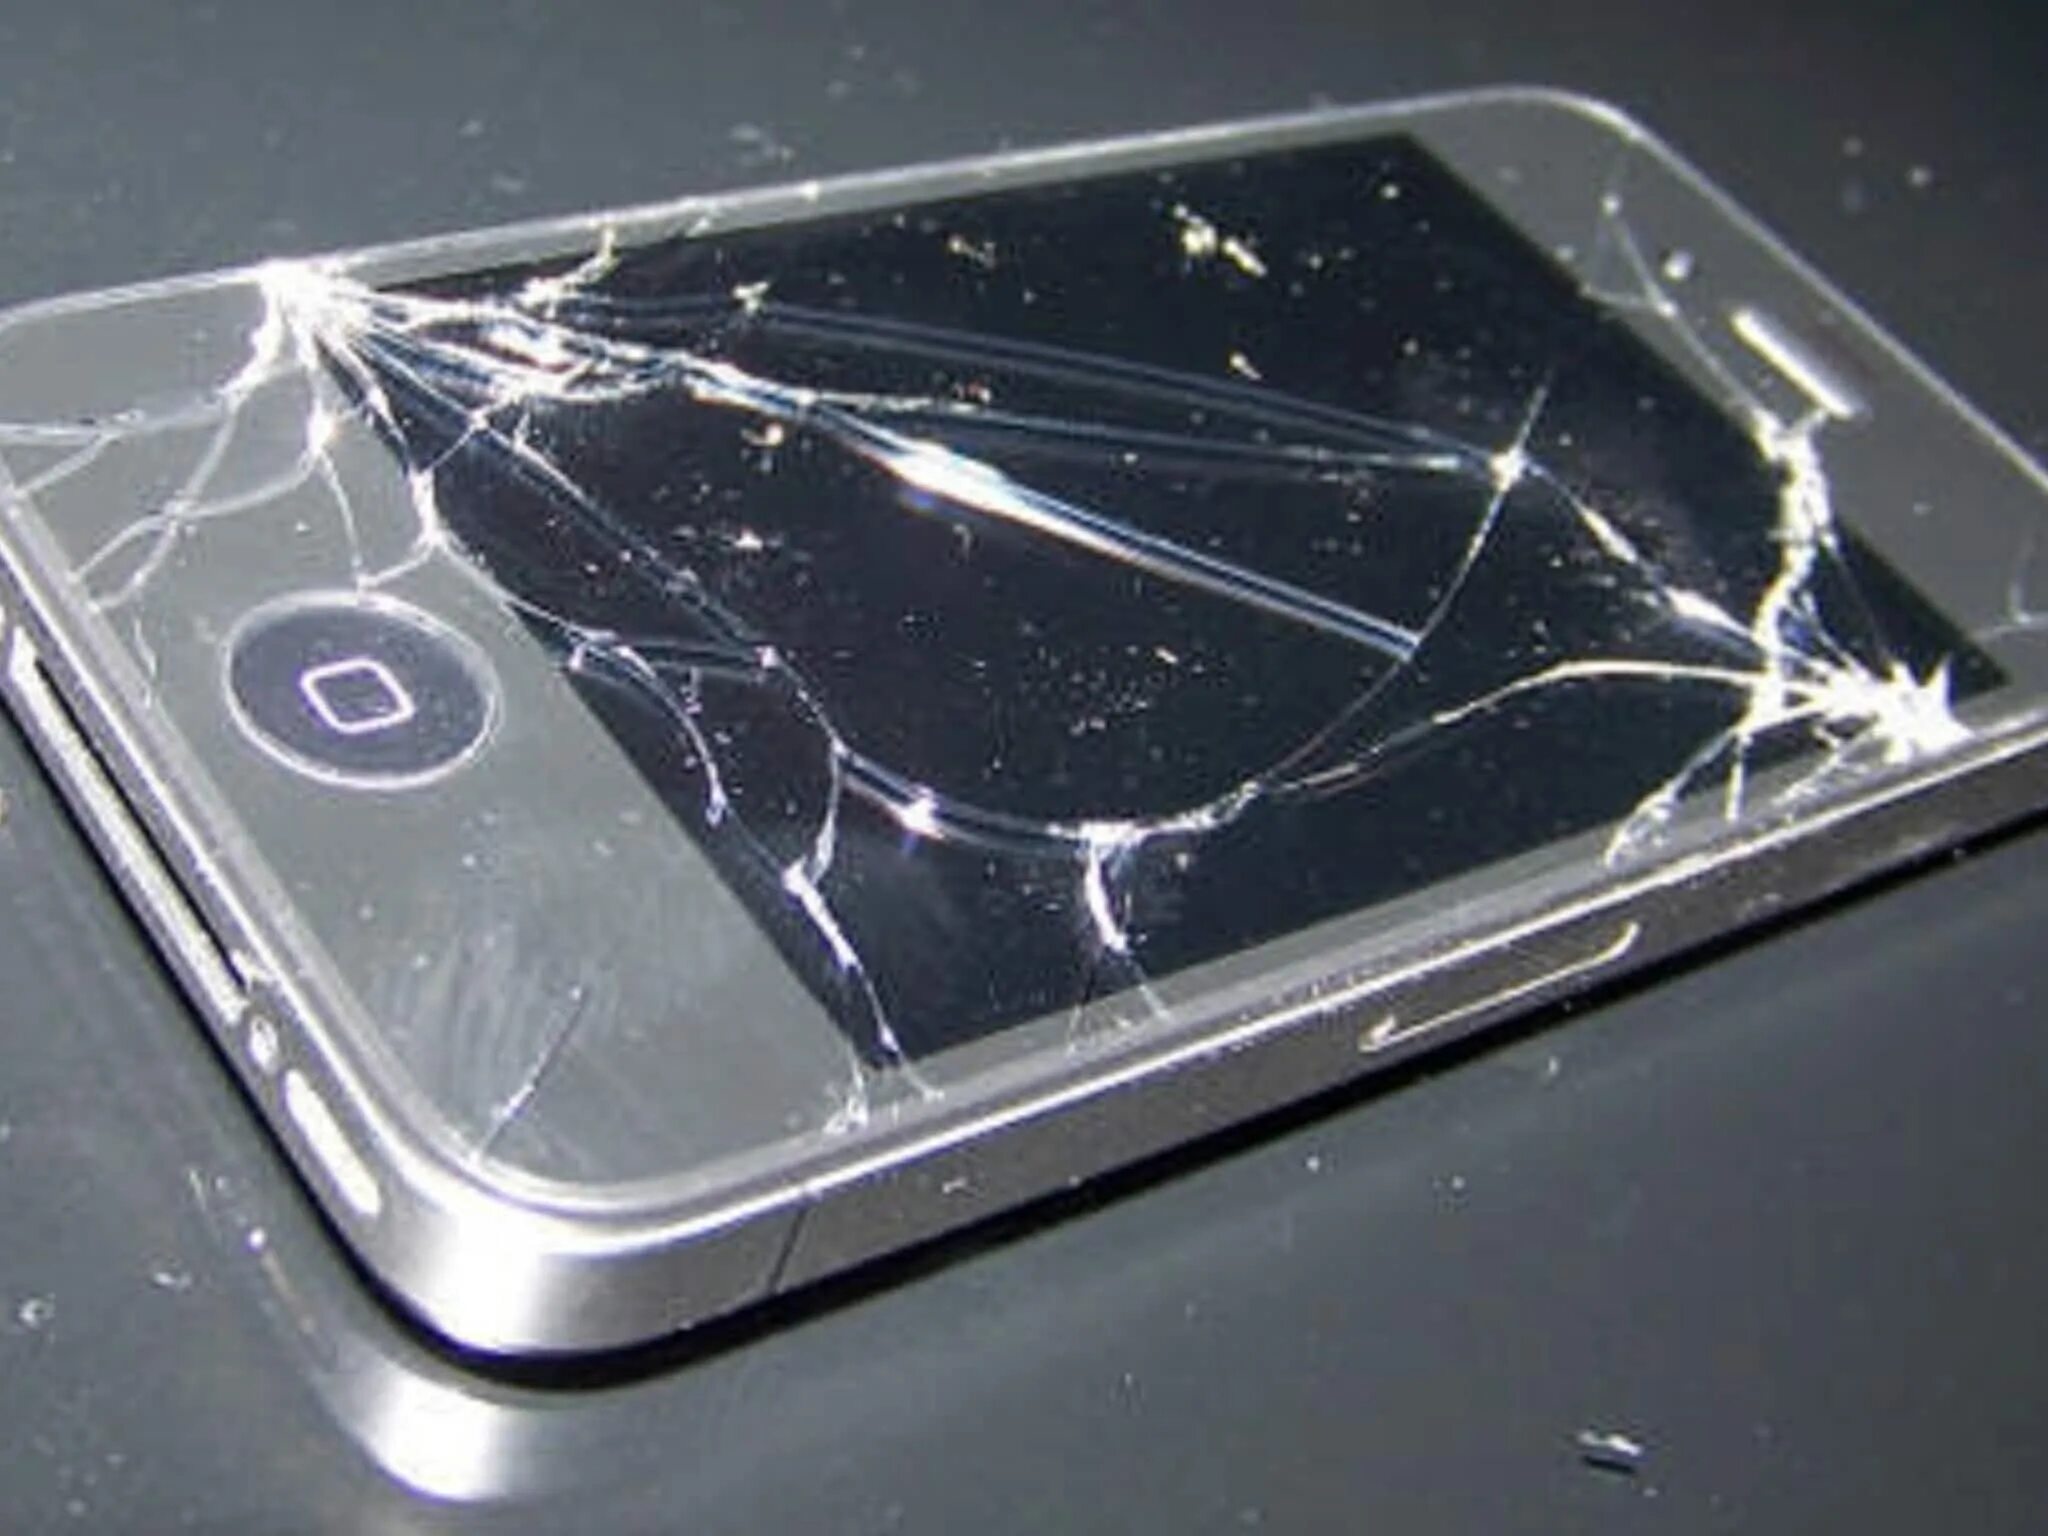 Разбила новый телефон. Разбитый айфон. Разбитые айфоны. Сломанный айфон. Сломанный сотовый телефон.